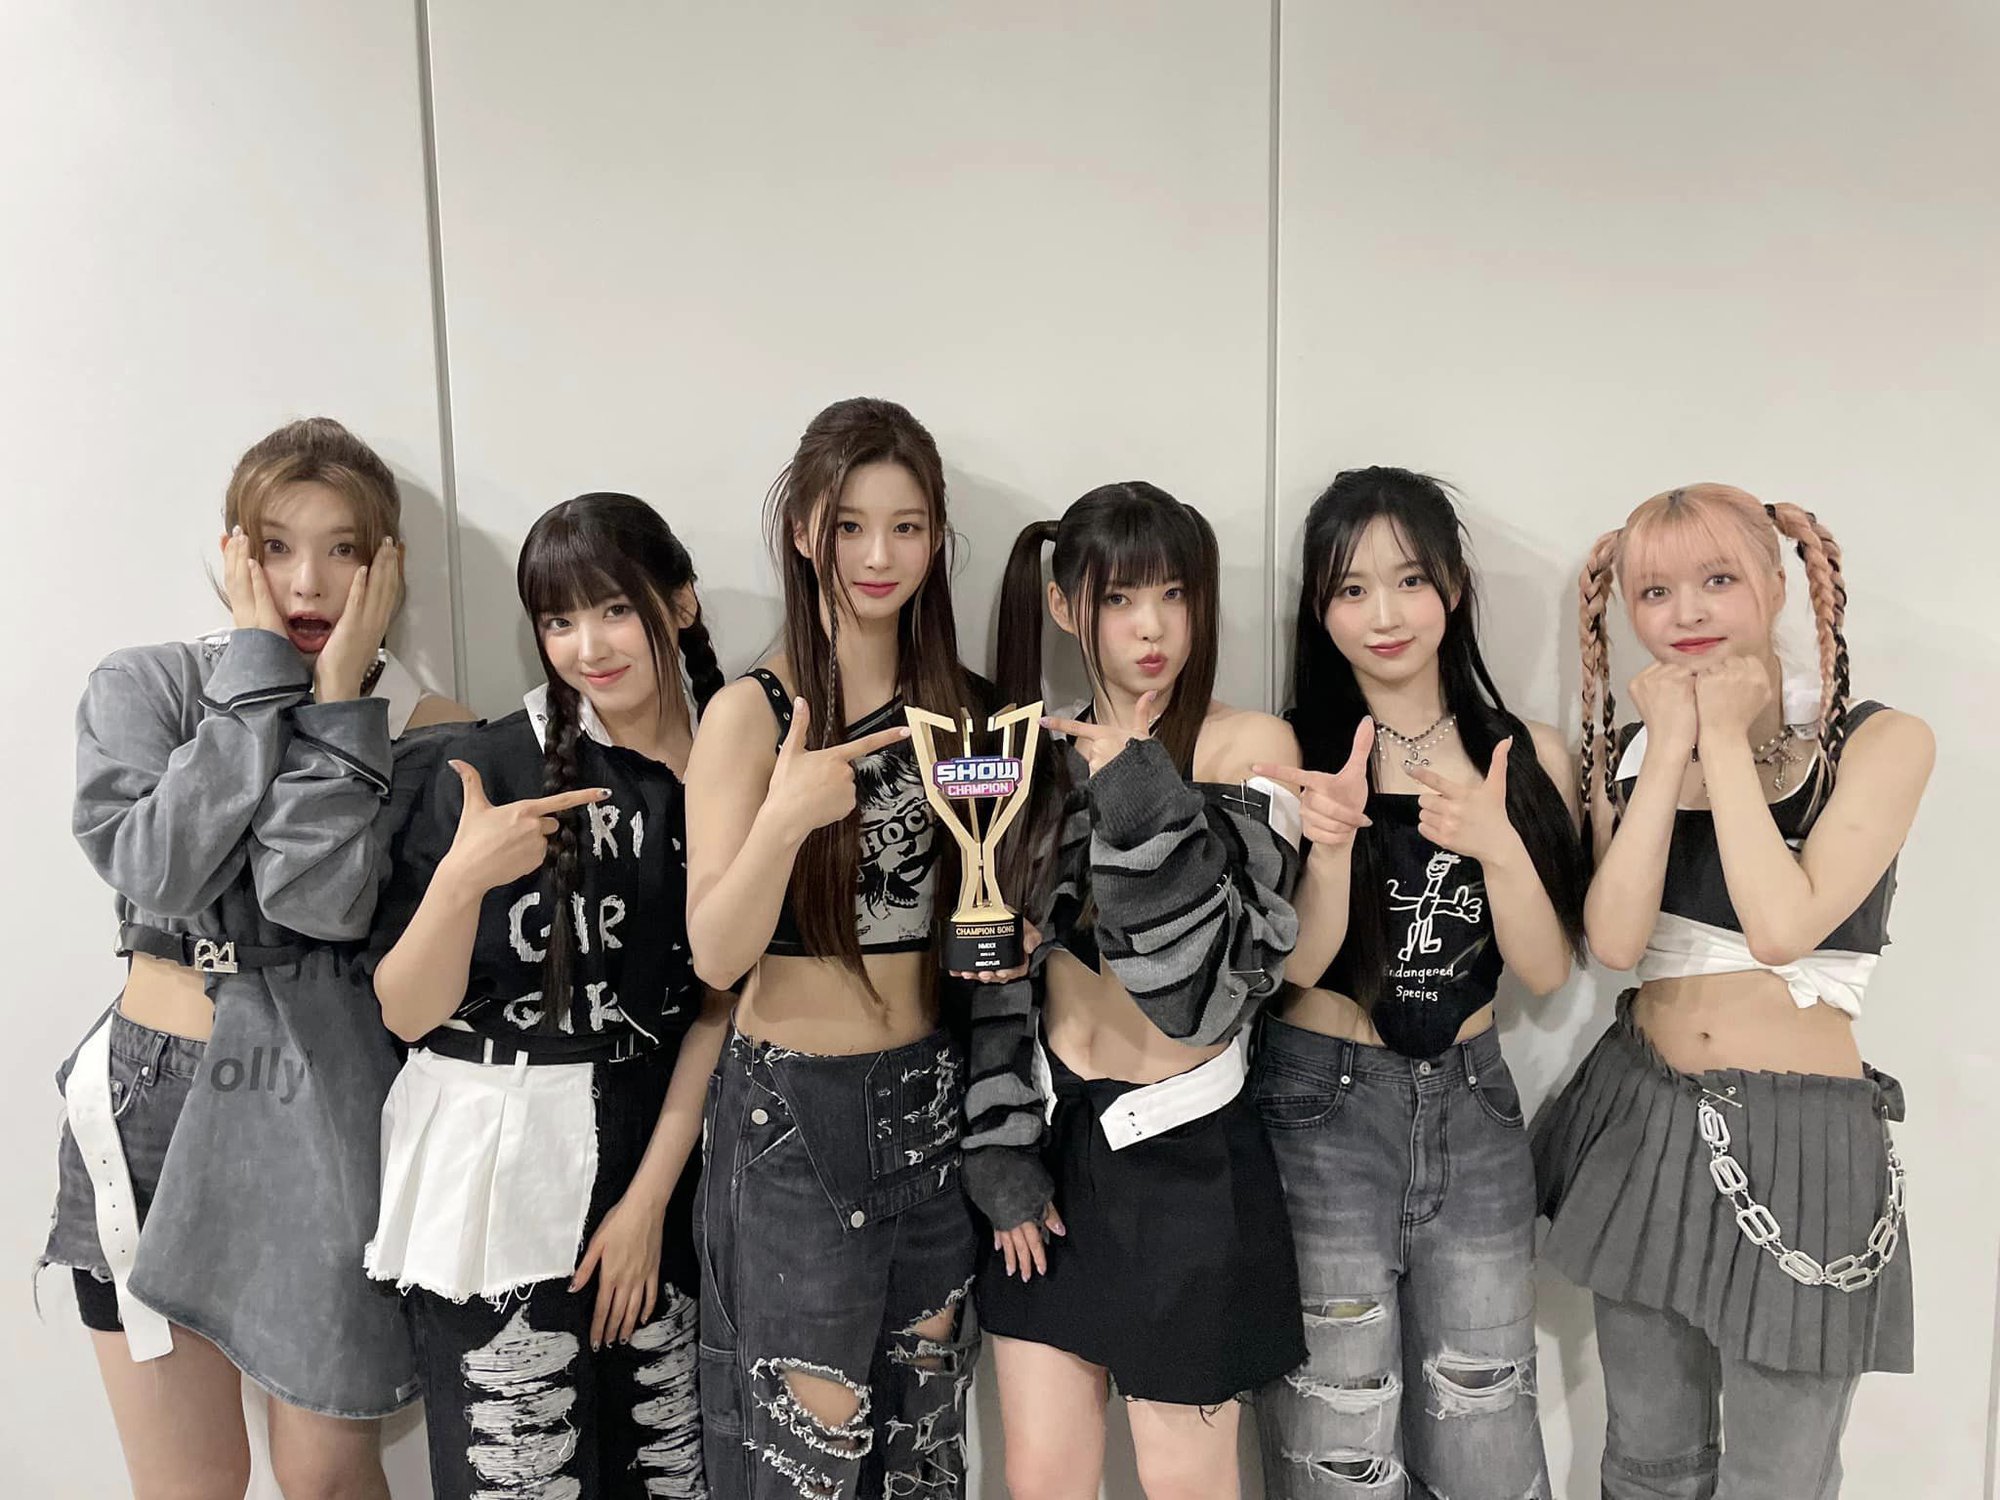 Nhóm nữ từng được xem là thất bại của JYP có chiến thắng đầu tiên trên show âm nhạc - Ảnh 3.